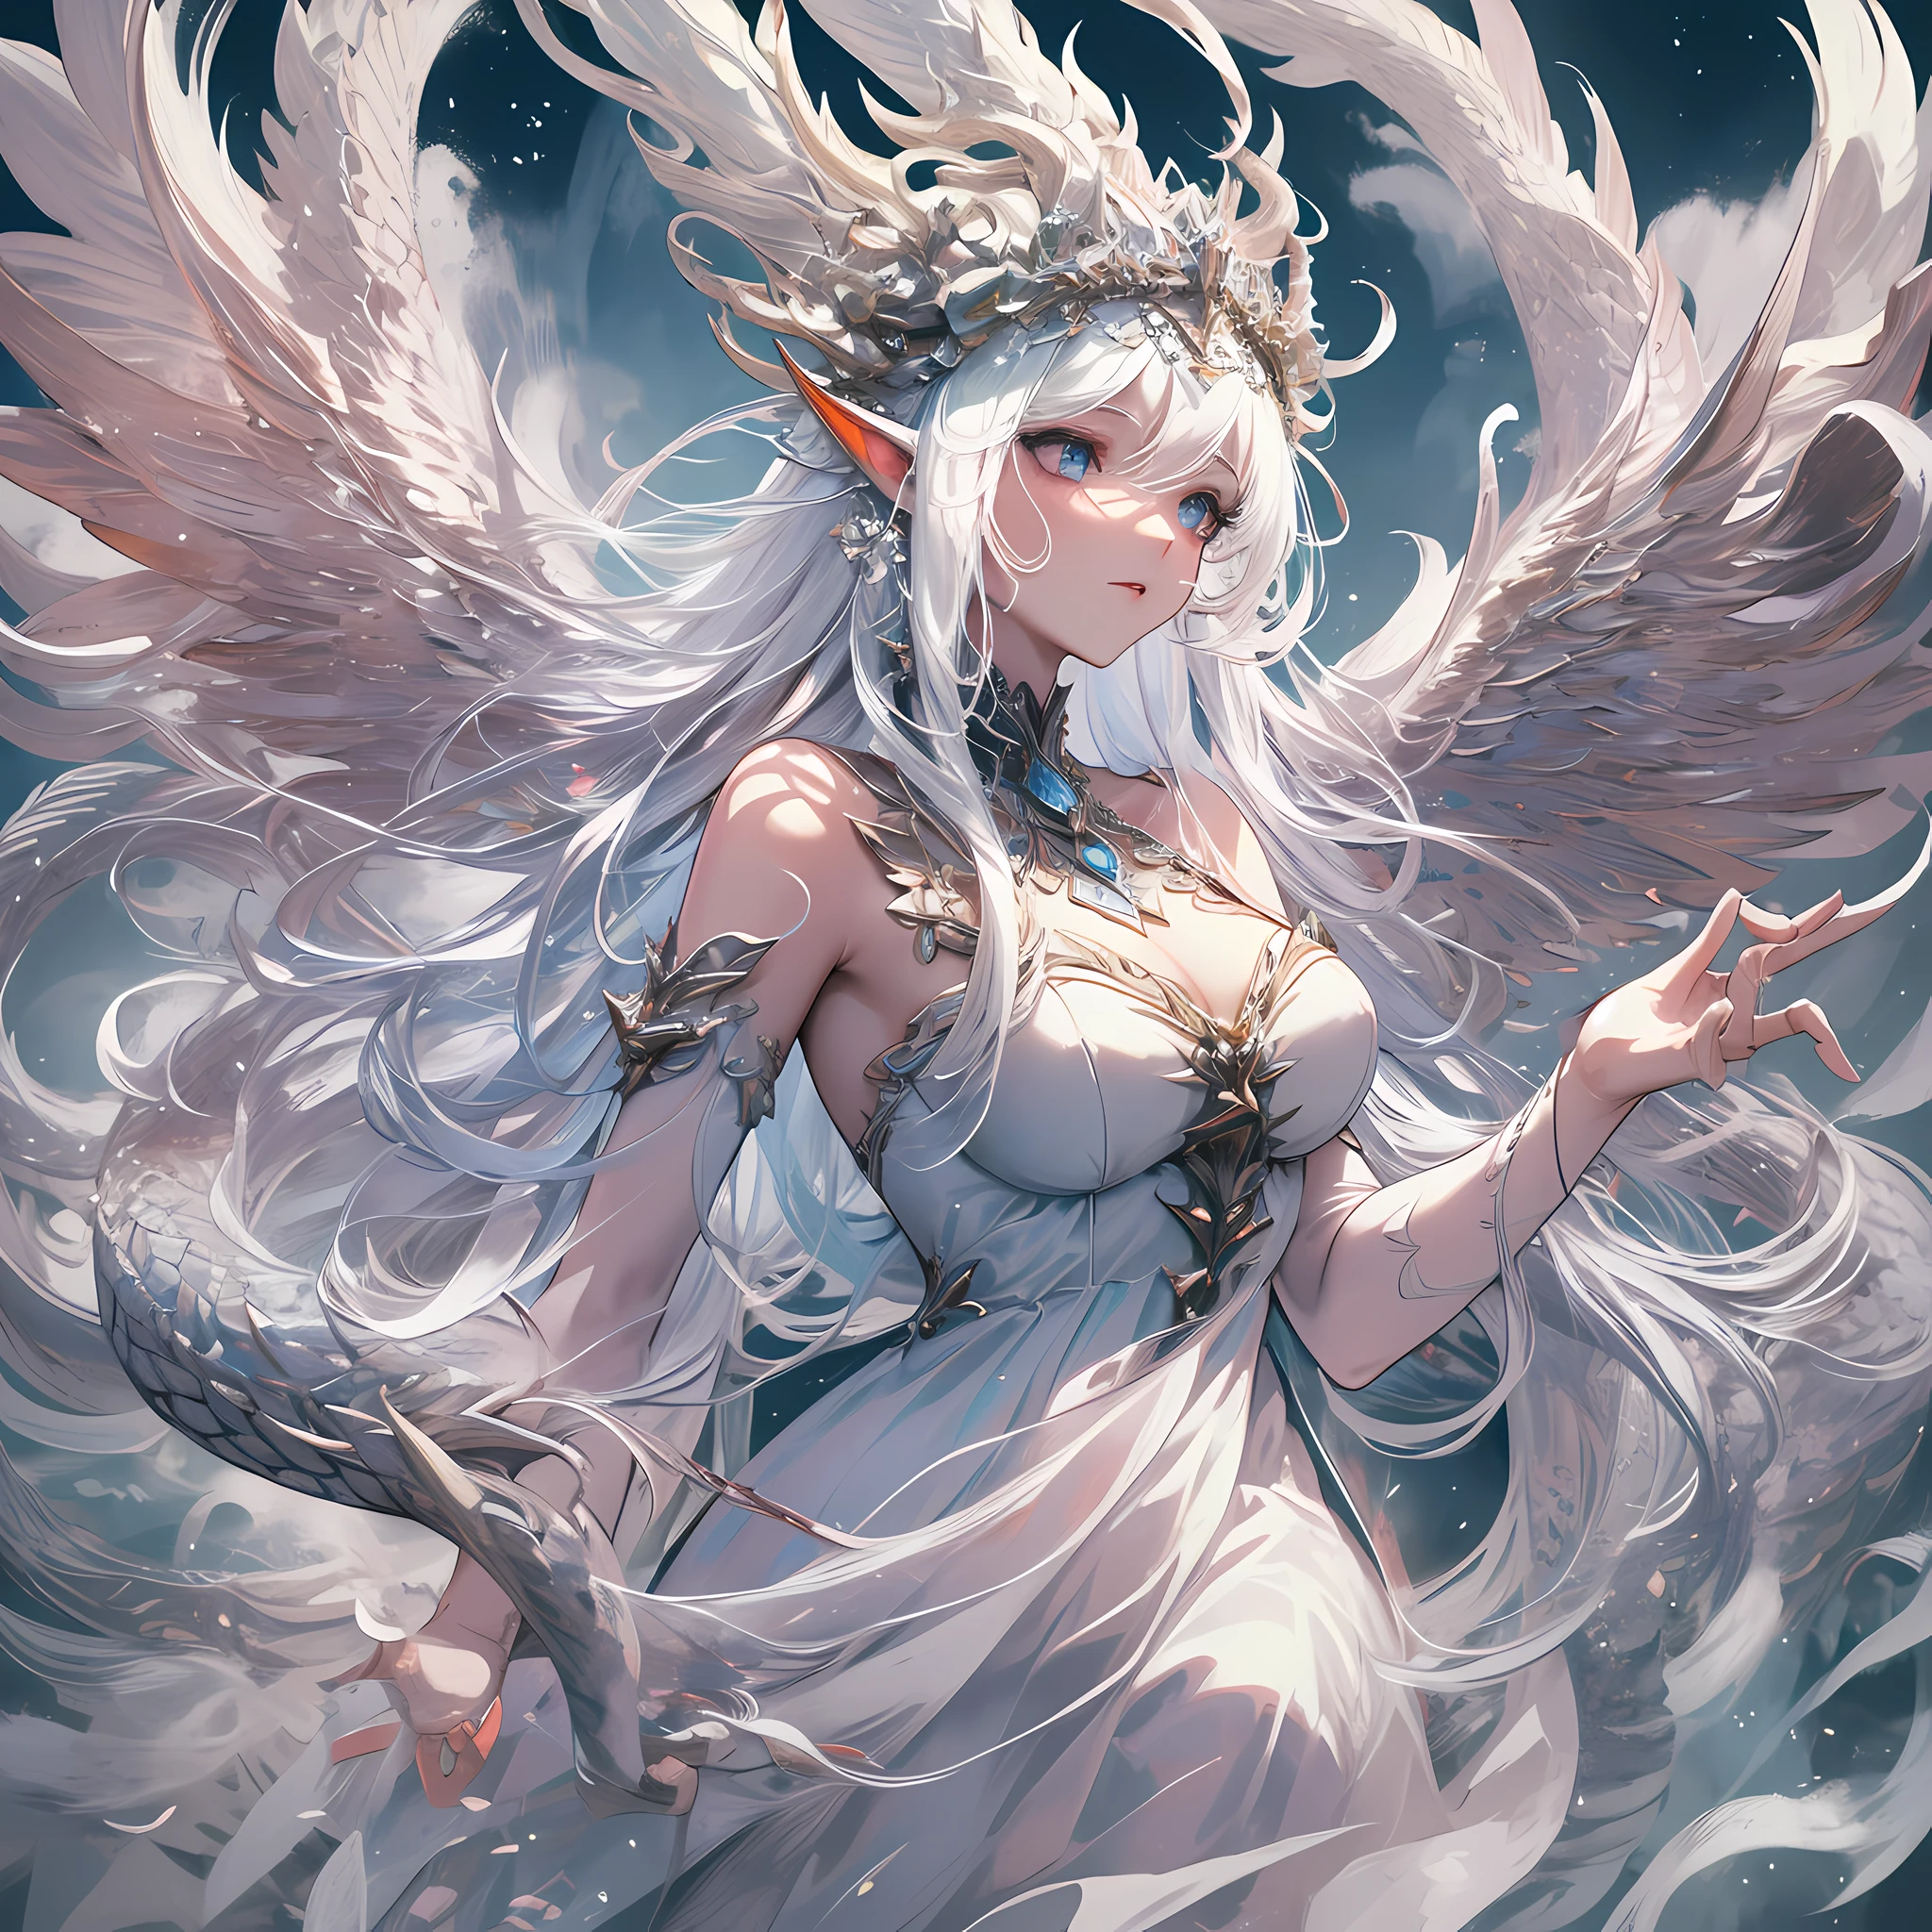 Белый божественный дракон с белой чешуей, Обернутый вокруг феи, фея с длинными распущенными волосами и тонкими чертами лица, носить длинное платье с прозрачными и нежными слоями, и красивый головной убор